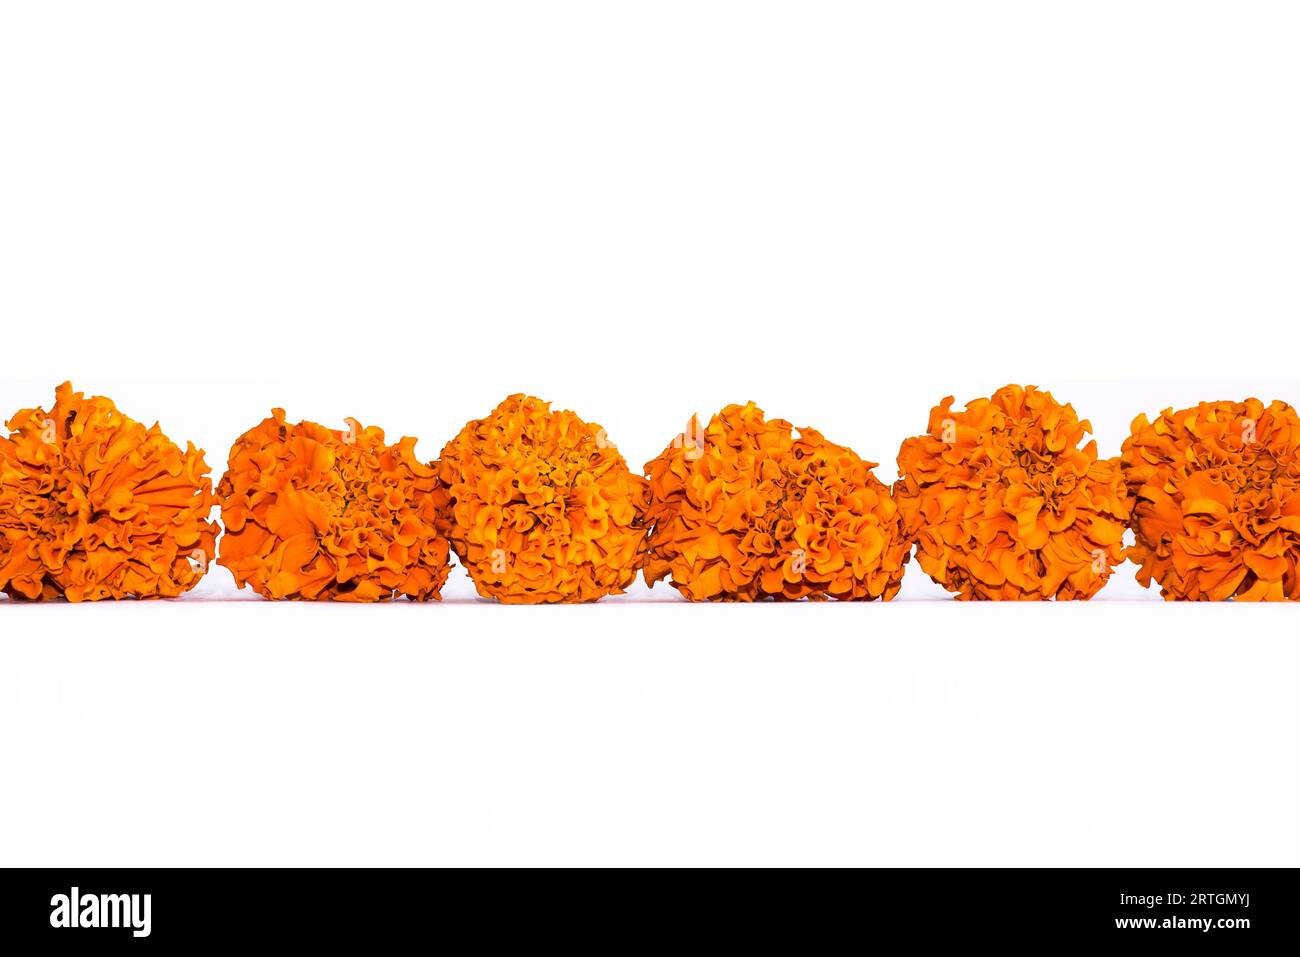 Les fleurs de Marigold orange disposées pour le rituel est un spectacle commun en Inde où cette fleur est utilisée pour tous les rituels hindous traditionnels Banque D'Images